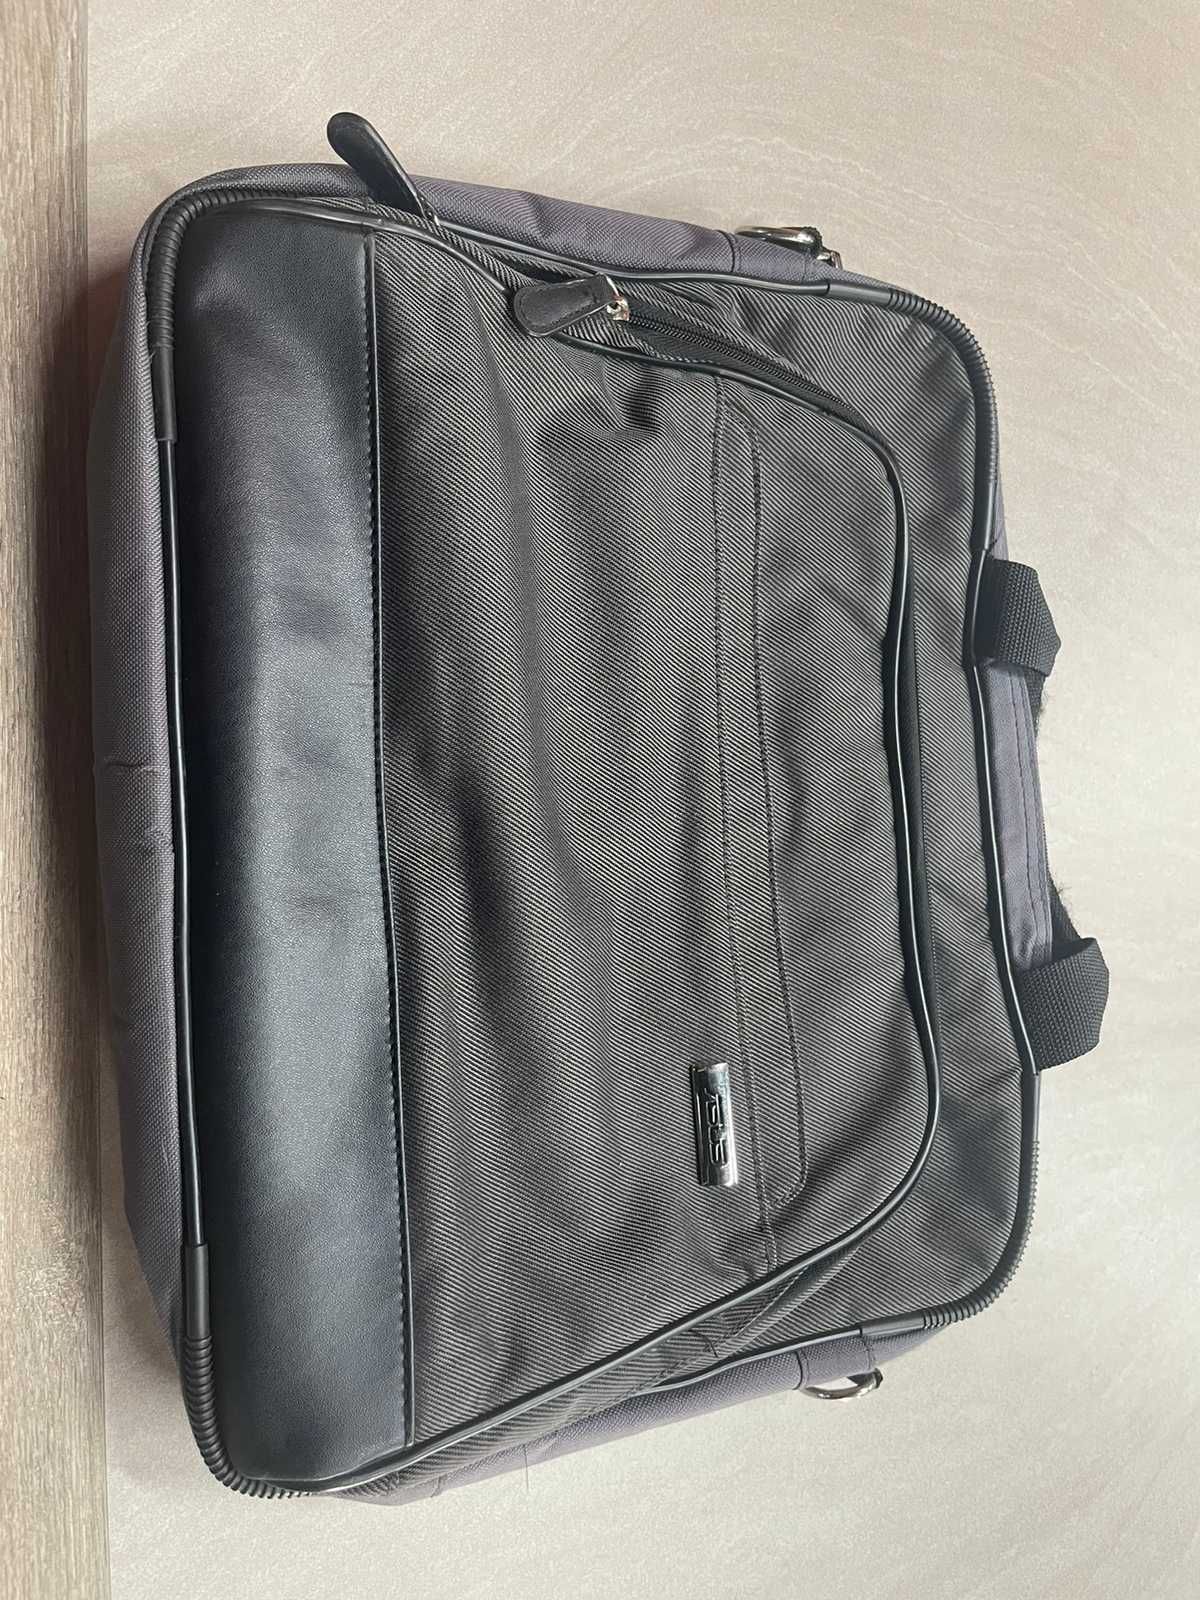 Ноутбук Acer Aspire + сумка к нему